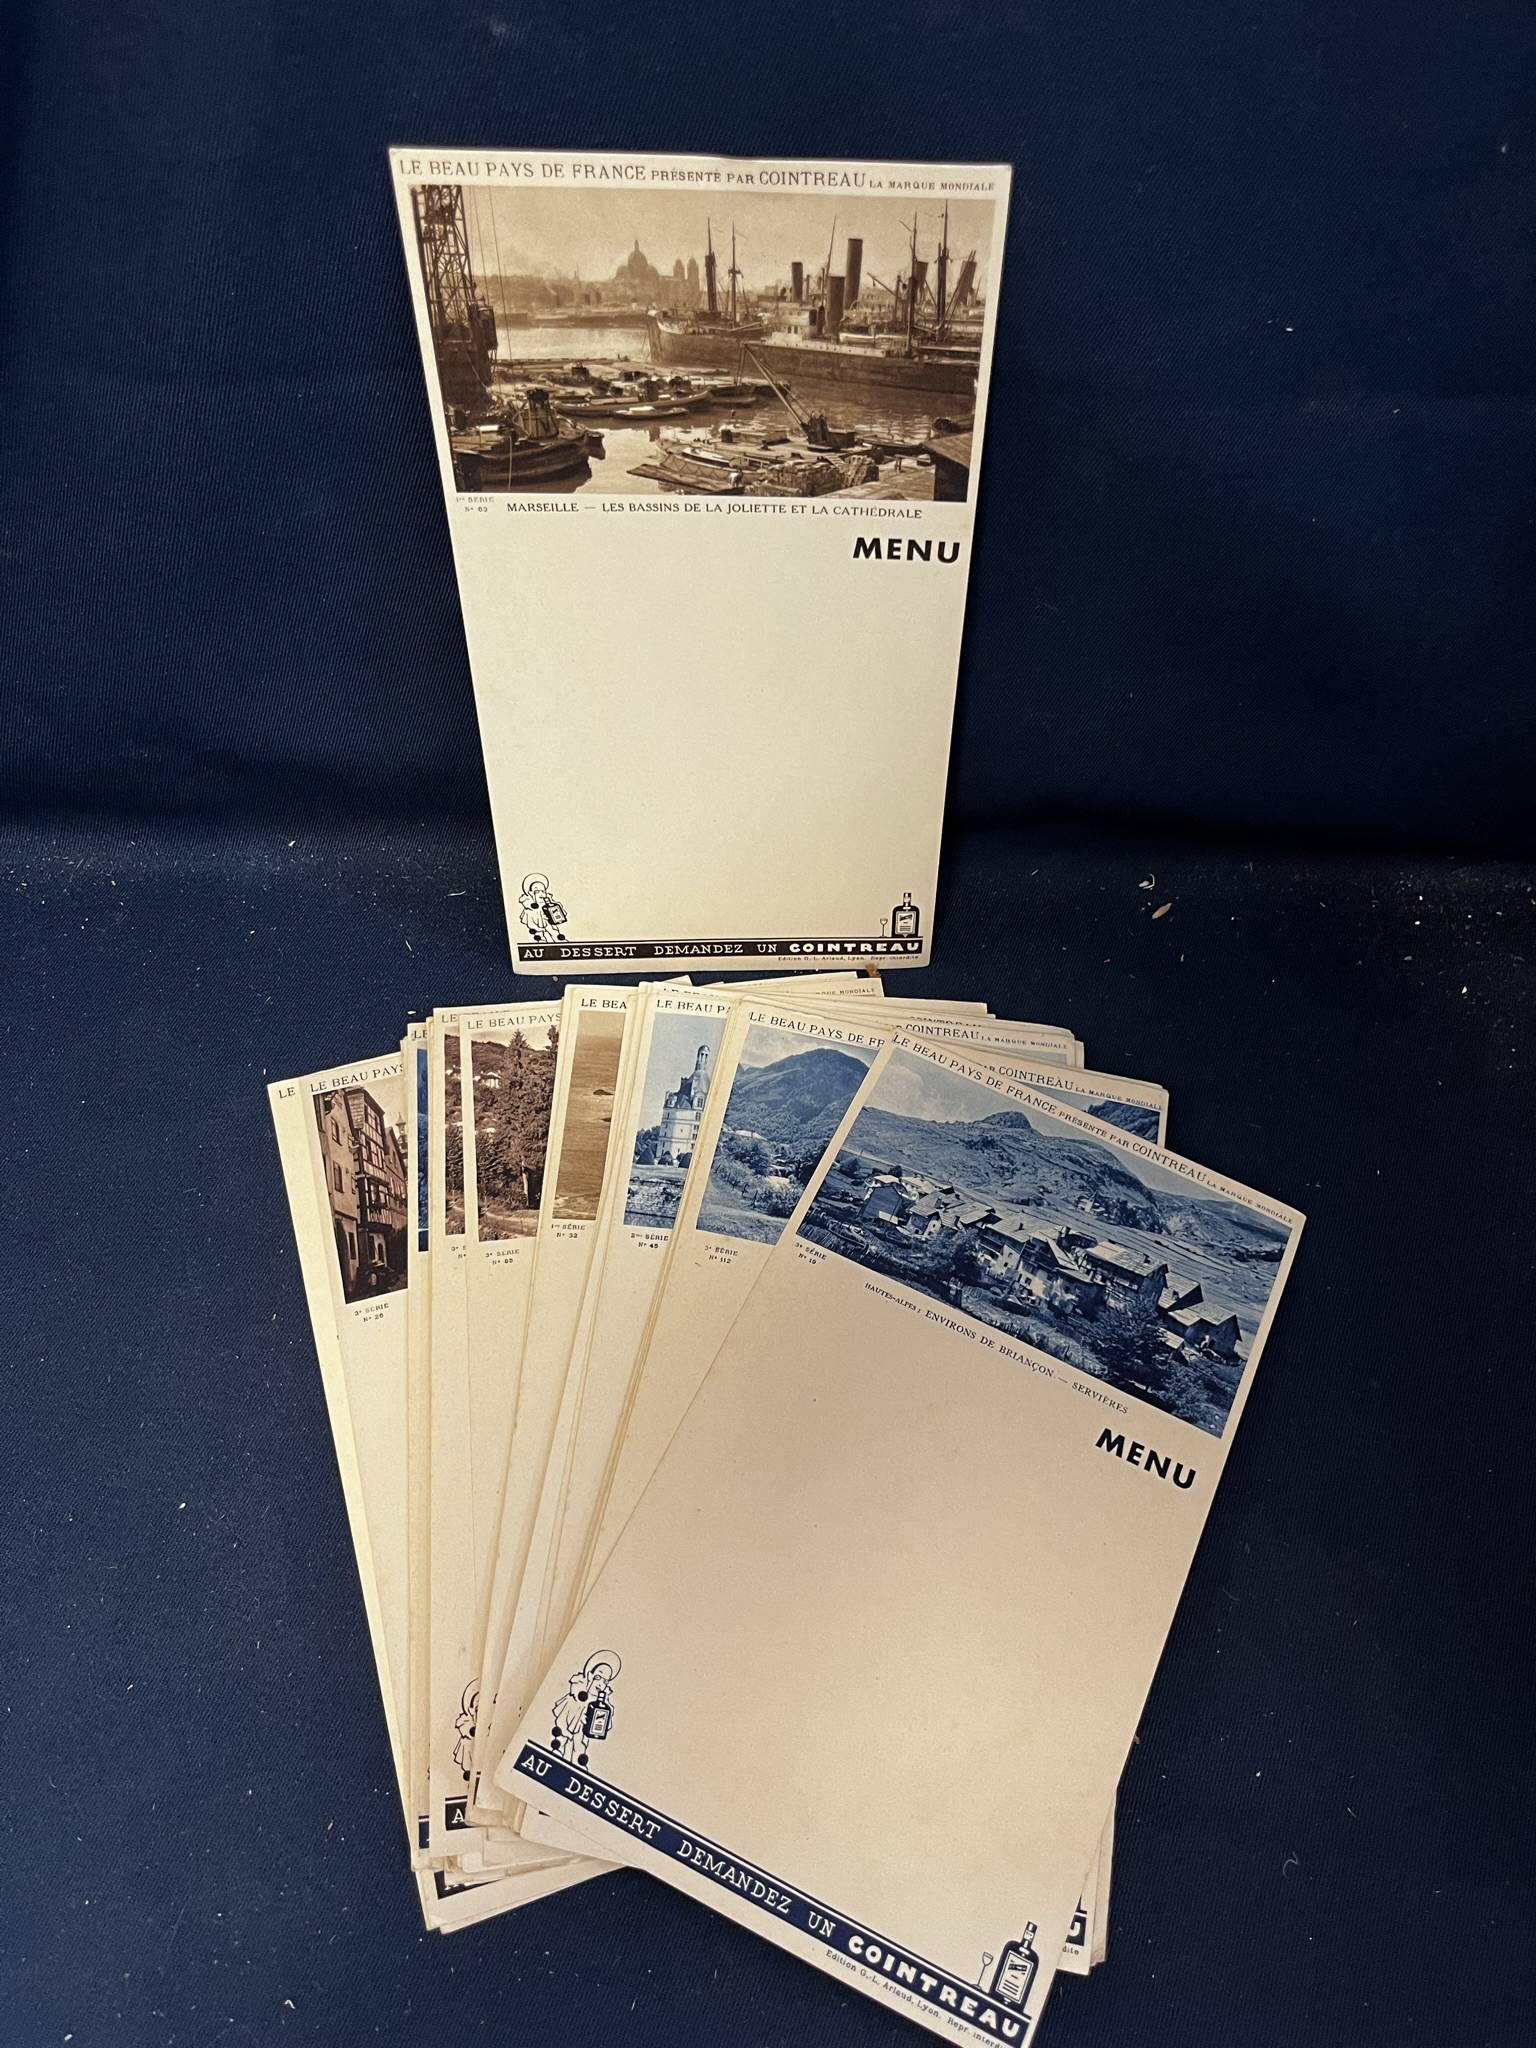 Mode - « Inspirations d'avant saison , été 1941 , édition BELL à Paris » -  Reliure numéro 31, Vente aux enchères : Cartes postales - Vieux papiers